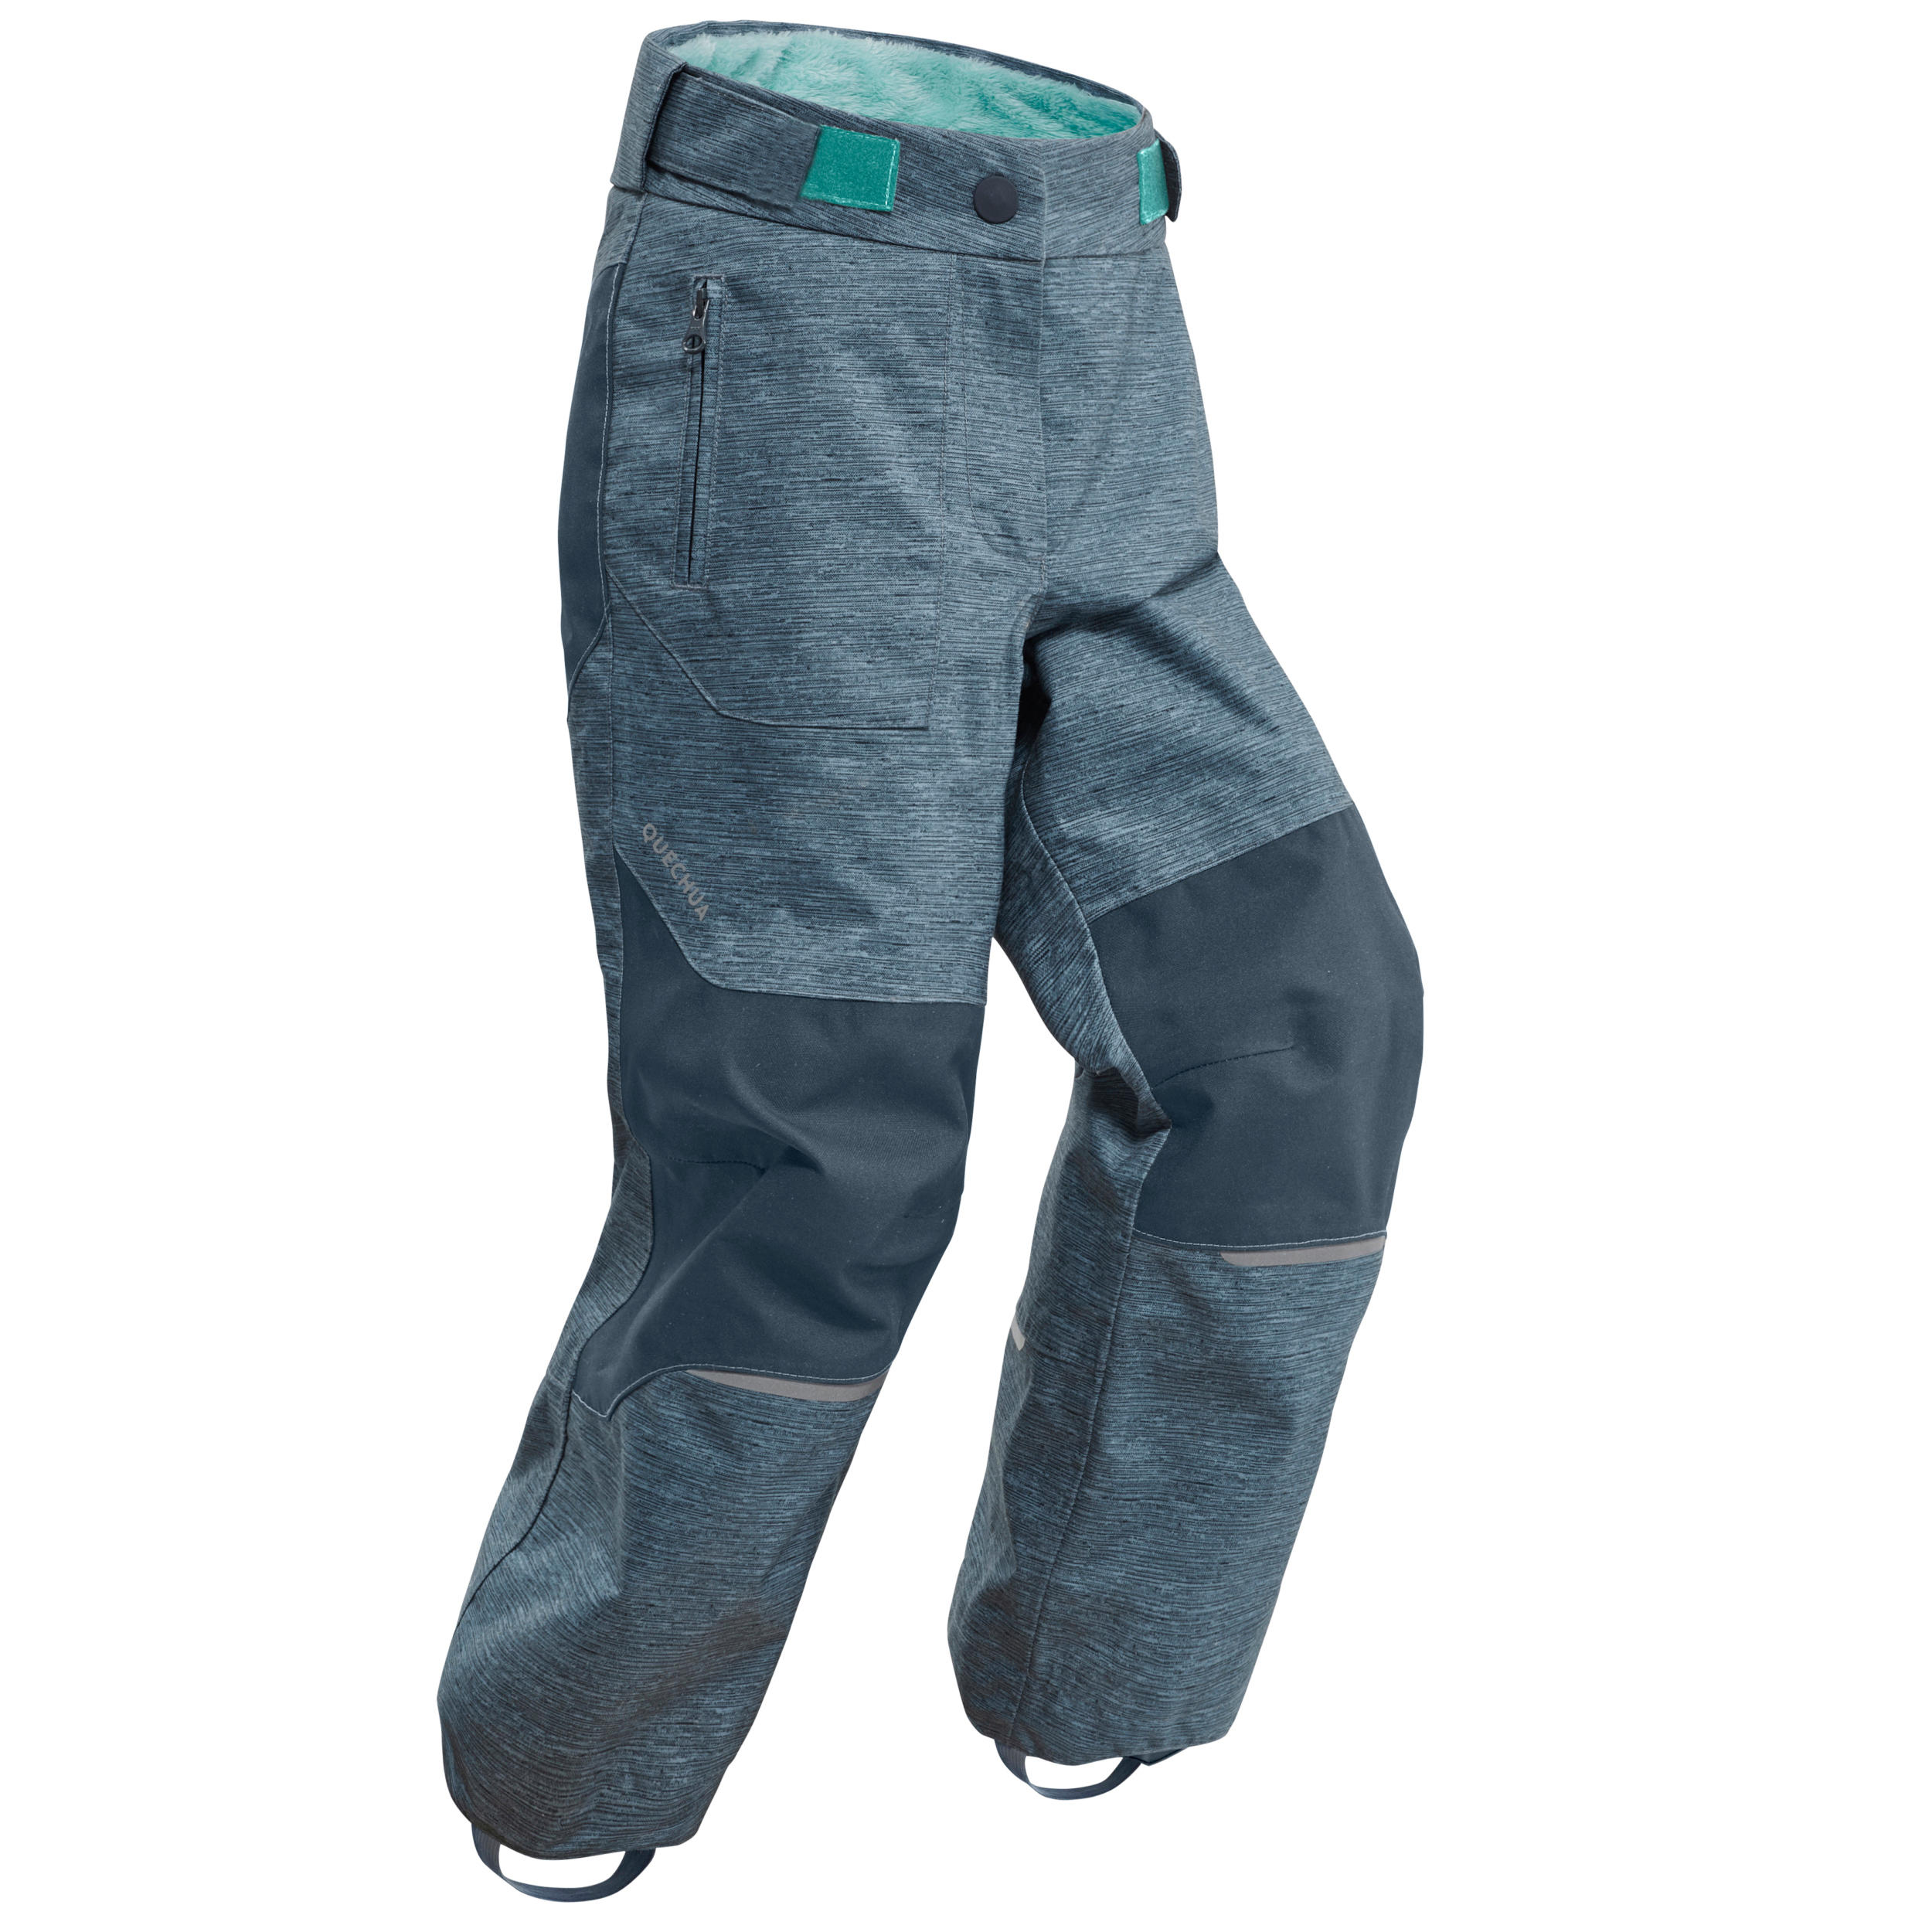 Pantalon Iarnă Impermeabil Drumeție pe zăpadă SH500 U-WARM Verde Băieți 2- 6 ani ani